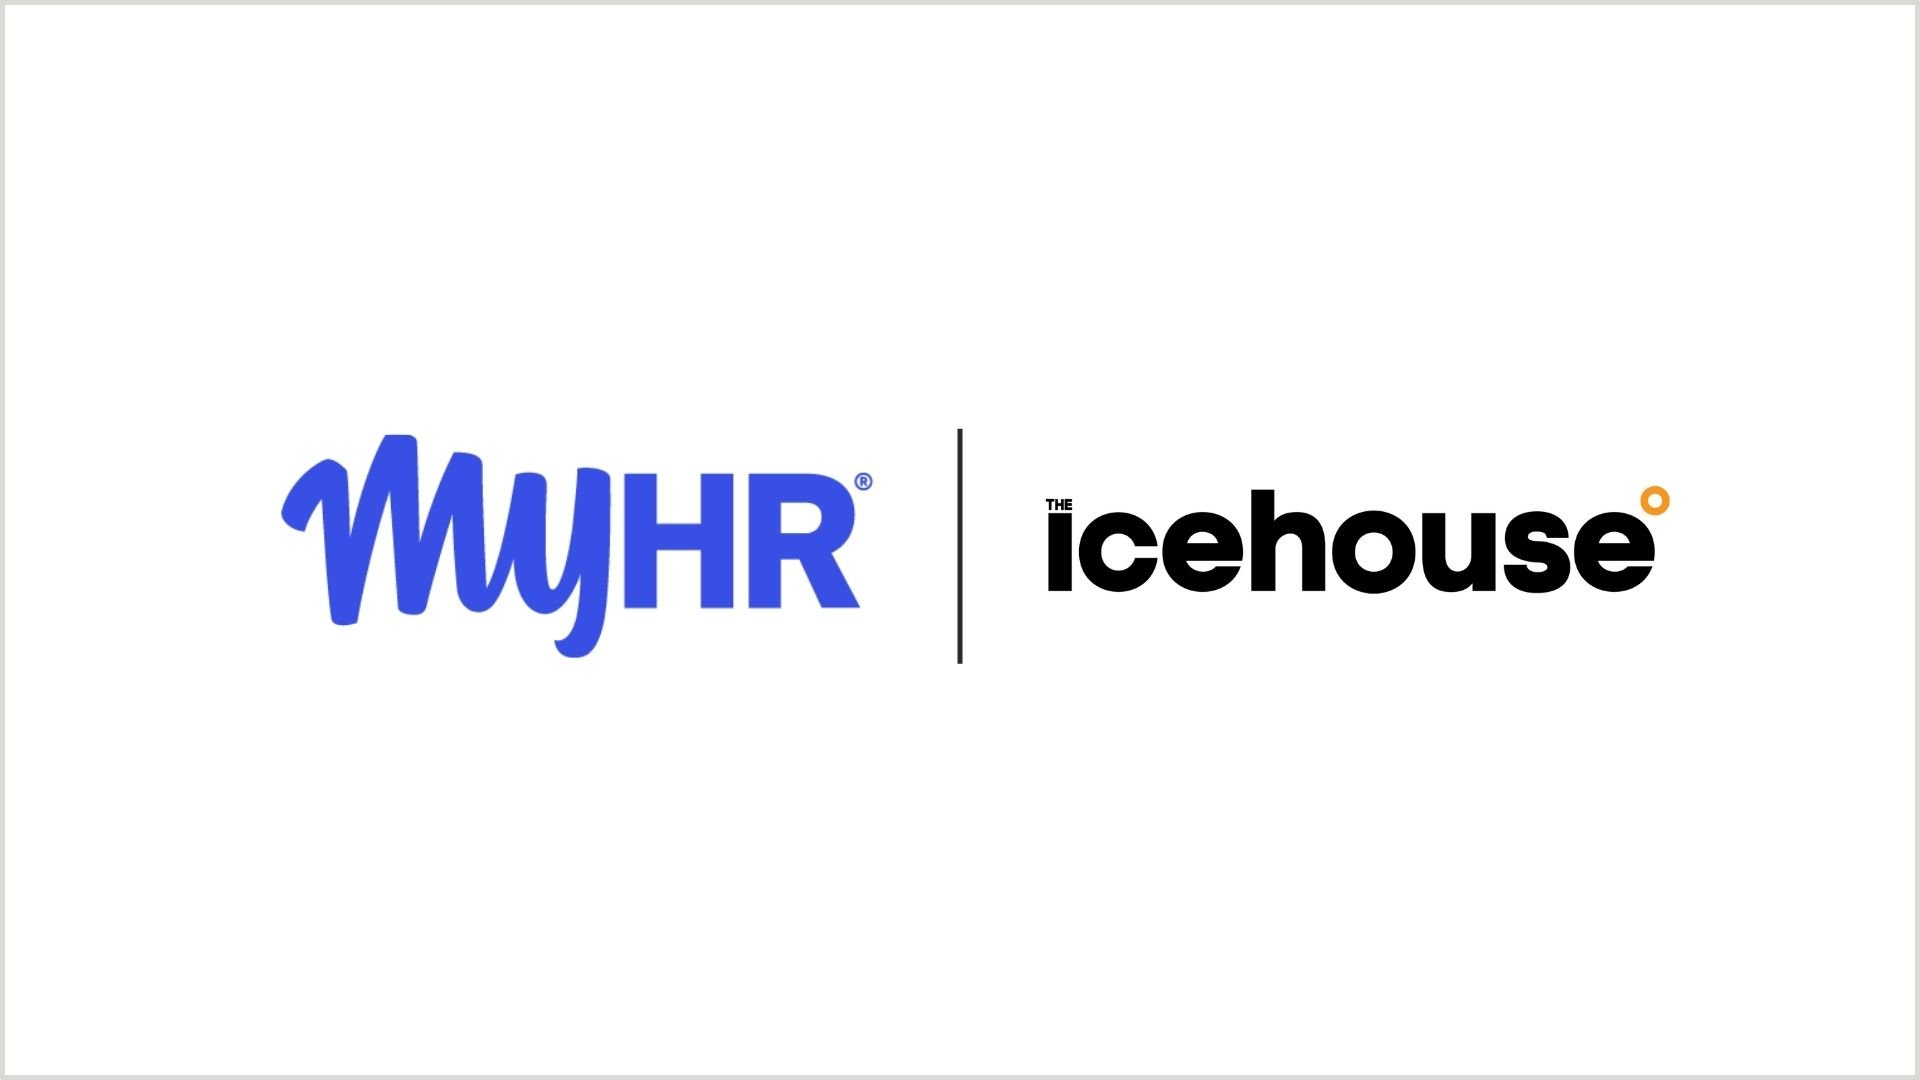 MyHR x The Icehouse (1)